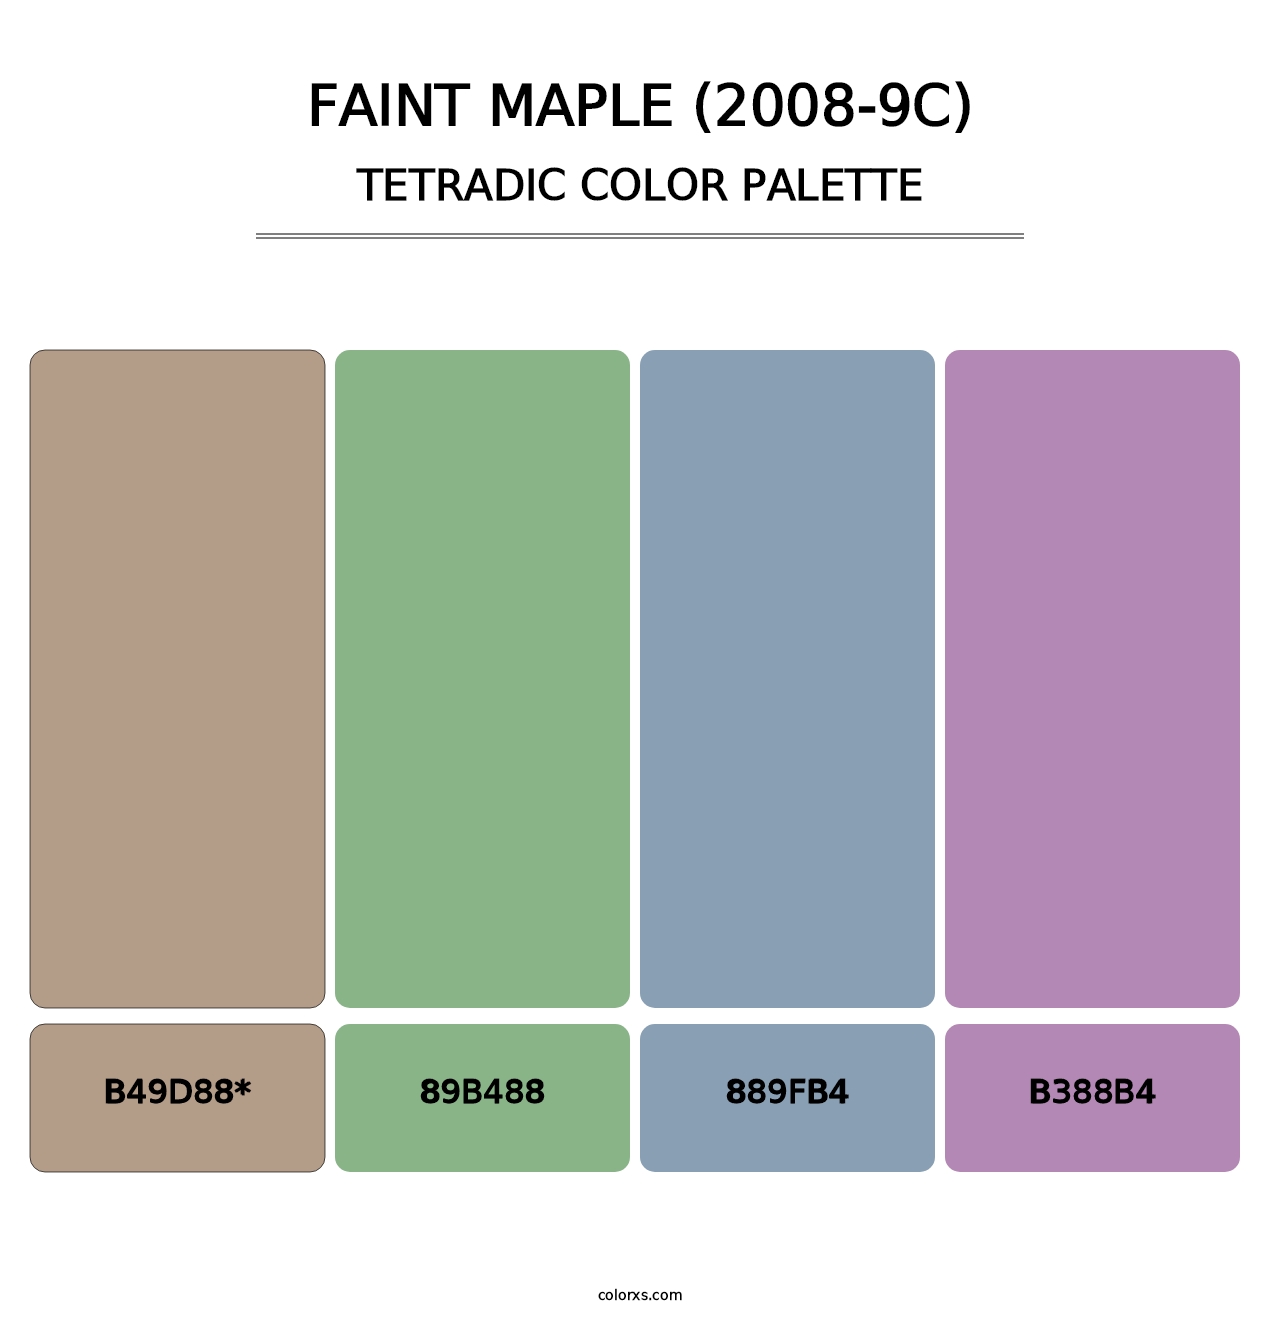 Faint Maple (2008-9C) - Tetradic Color Palette